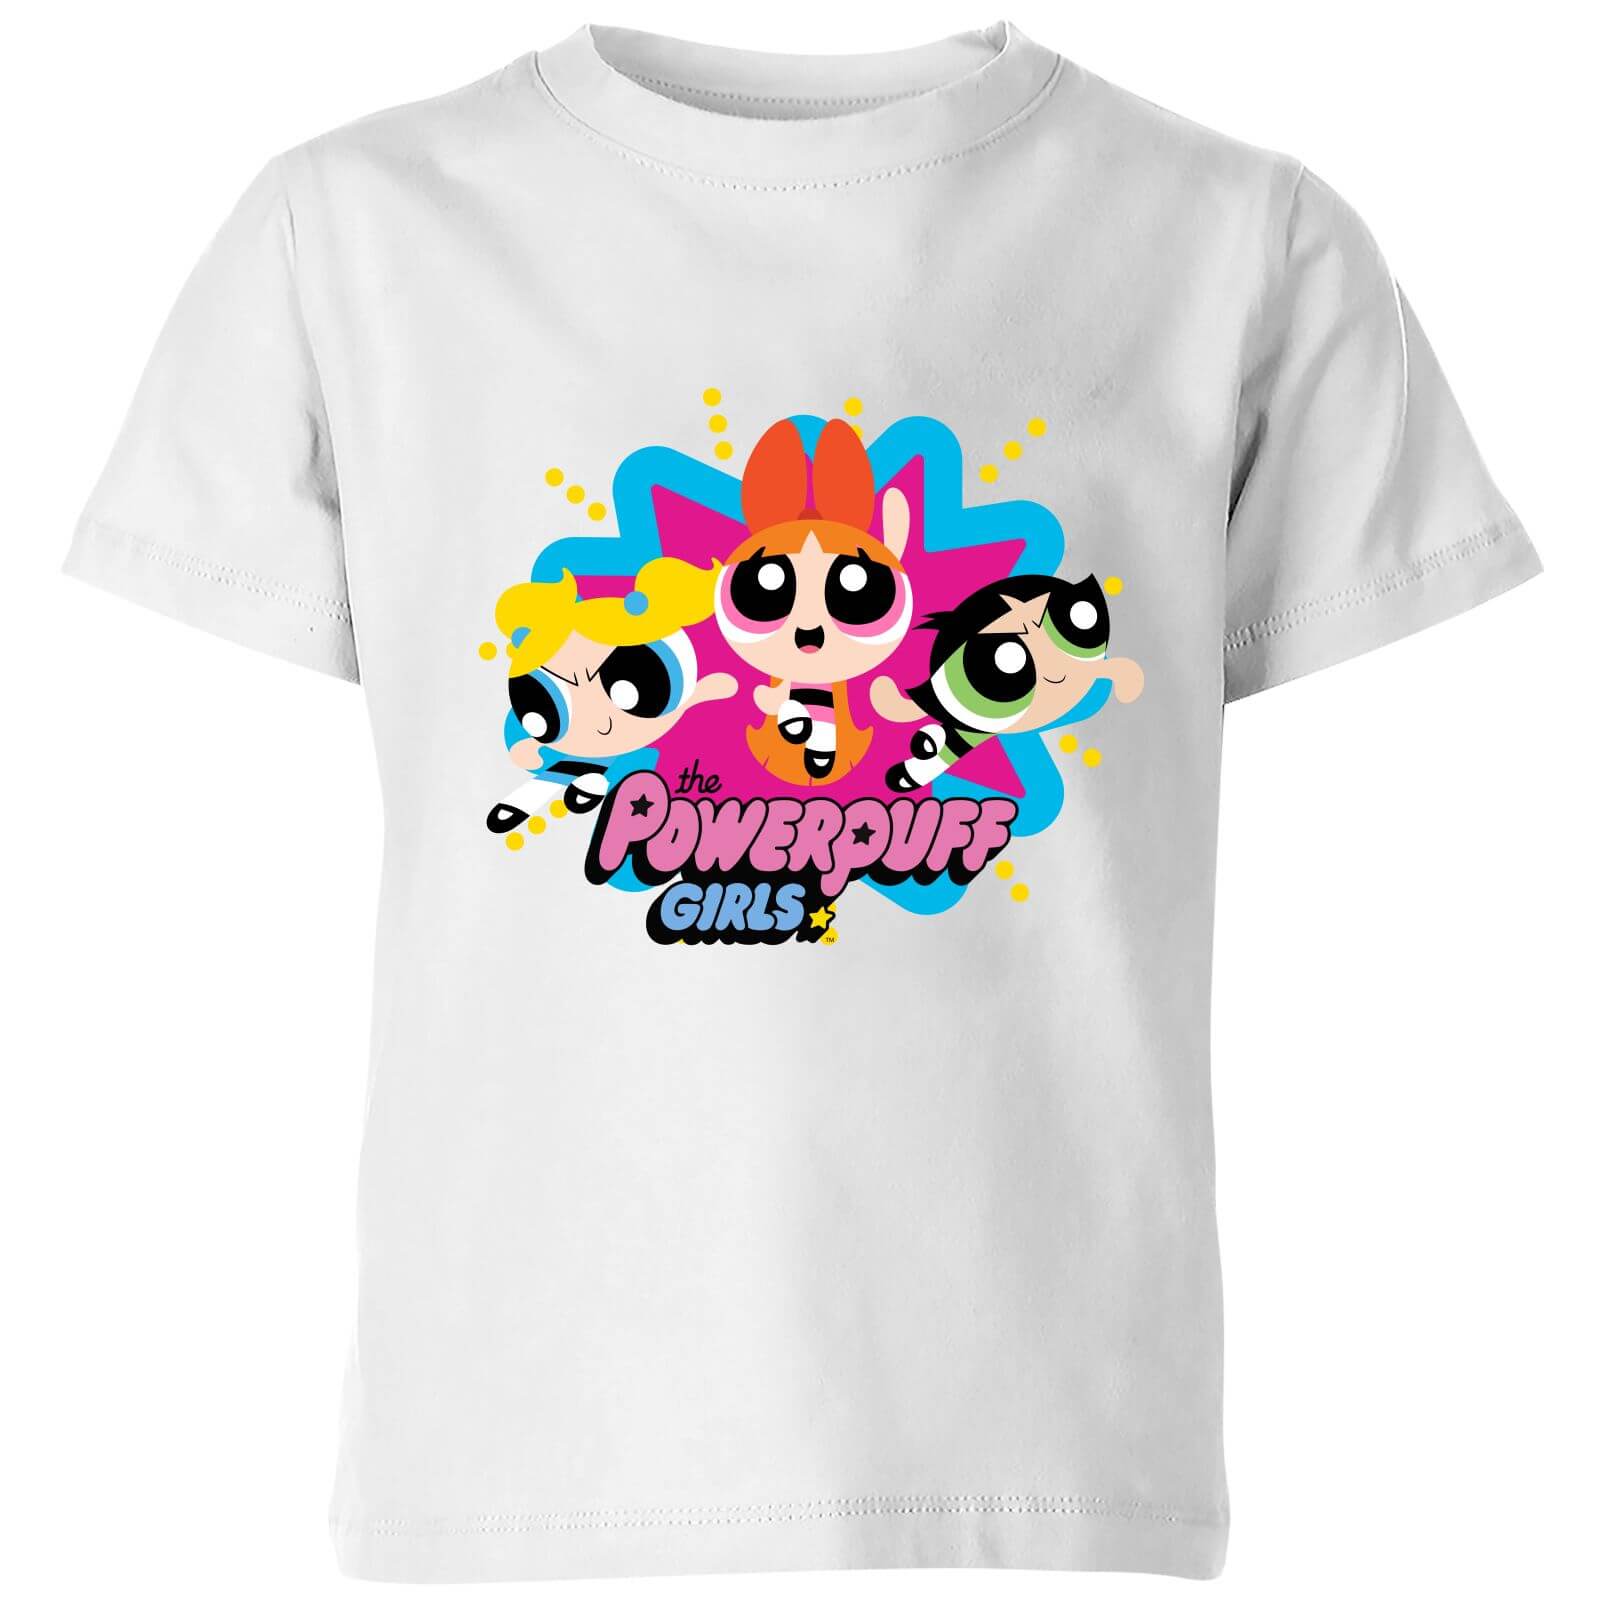 The Powerpuff Girls Kids' T-Shirt - White - 3-4 Years - White